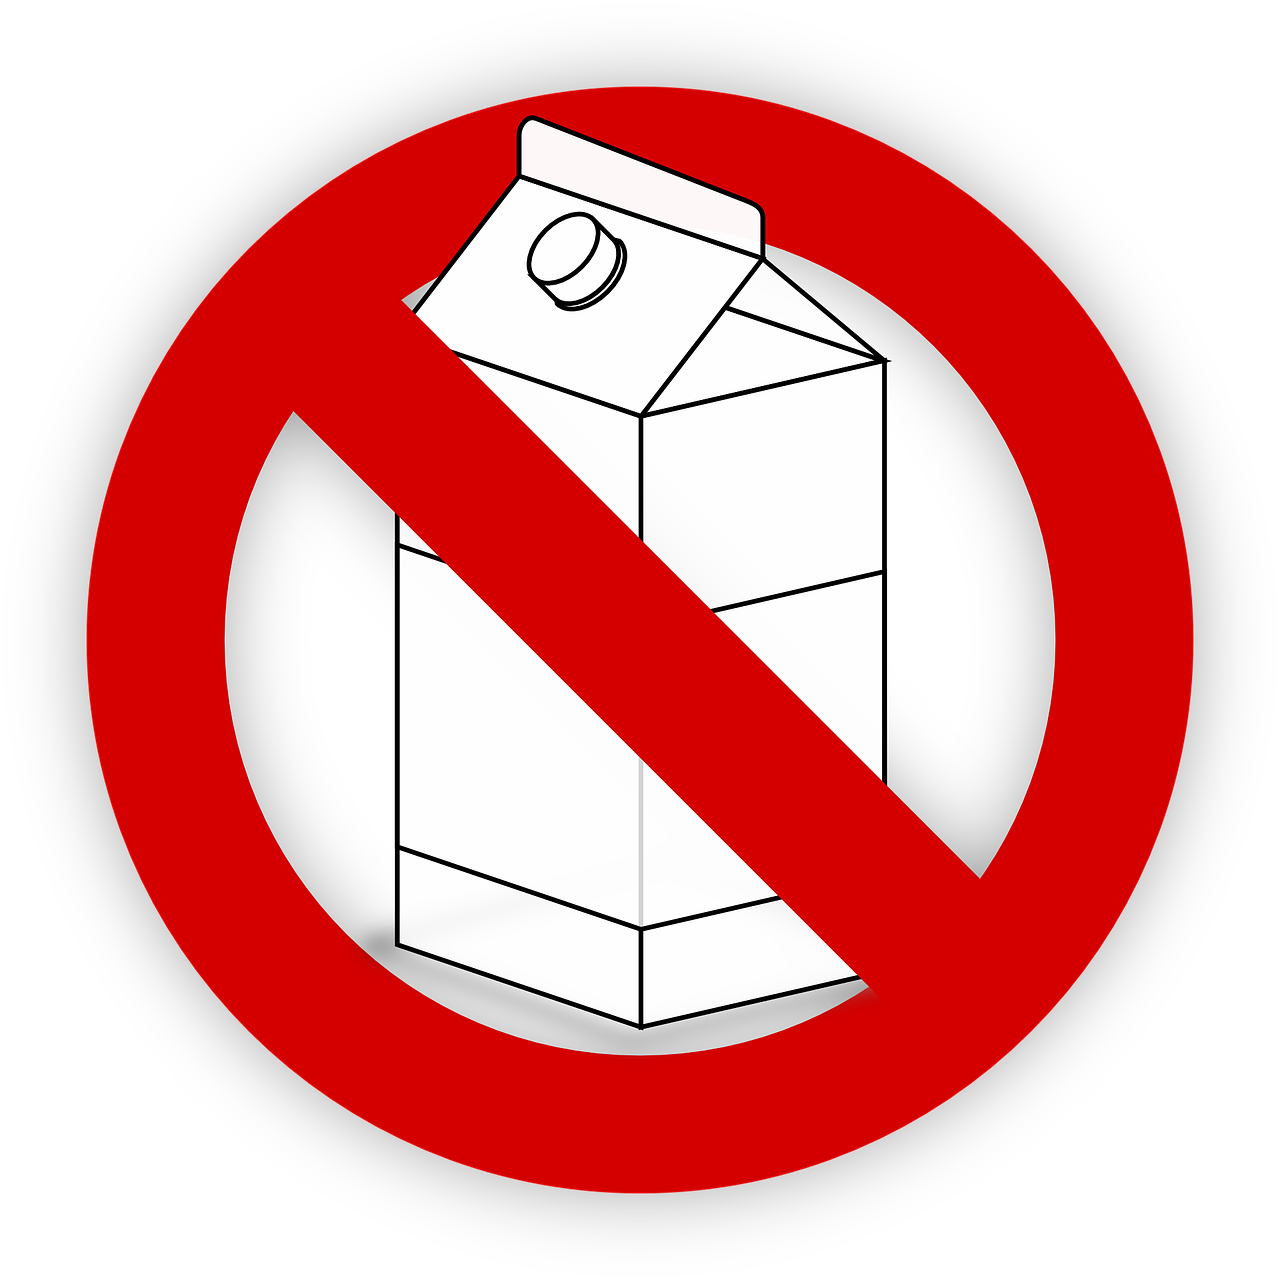 Молоко перечеркнуто. Молоко запрещено. Запрет на молоко. Перечеркнутые молочные продукты.